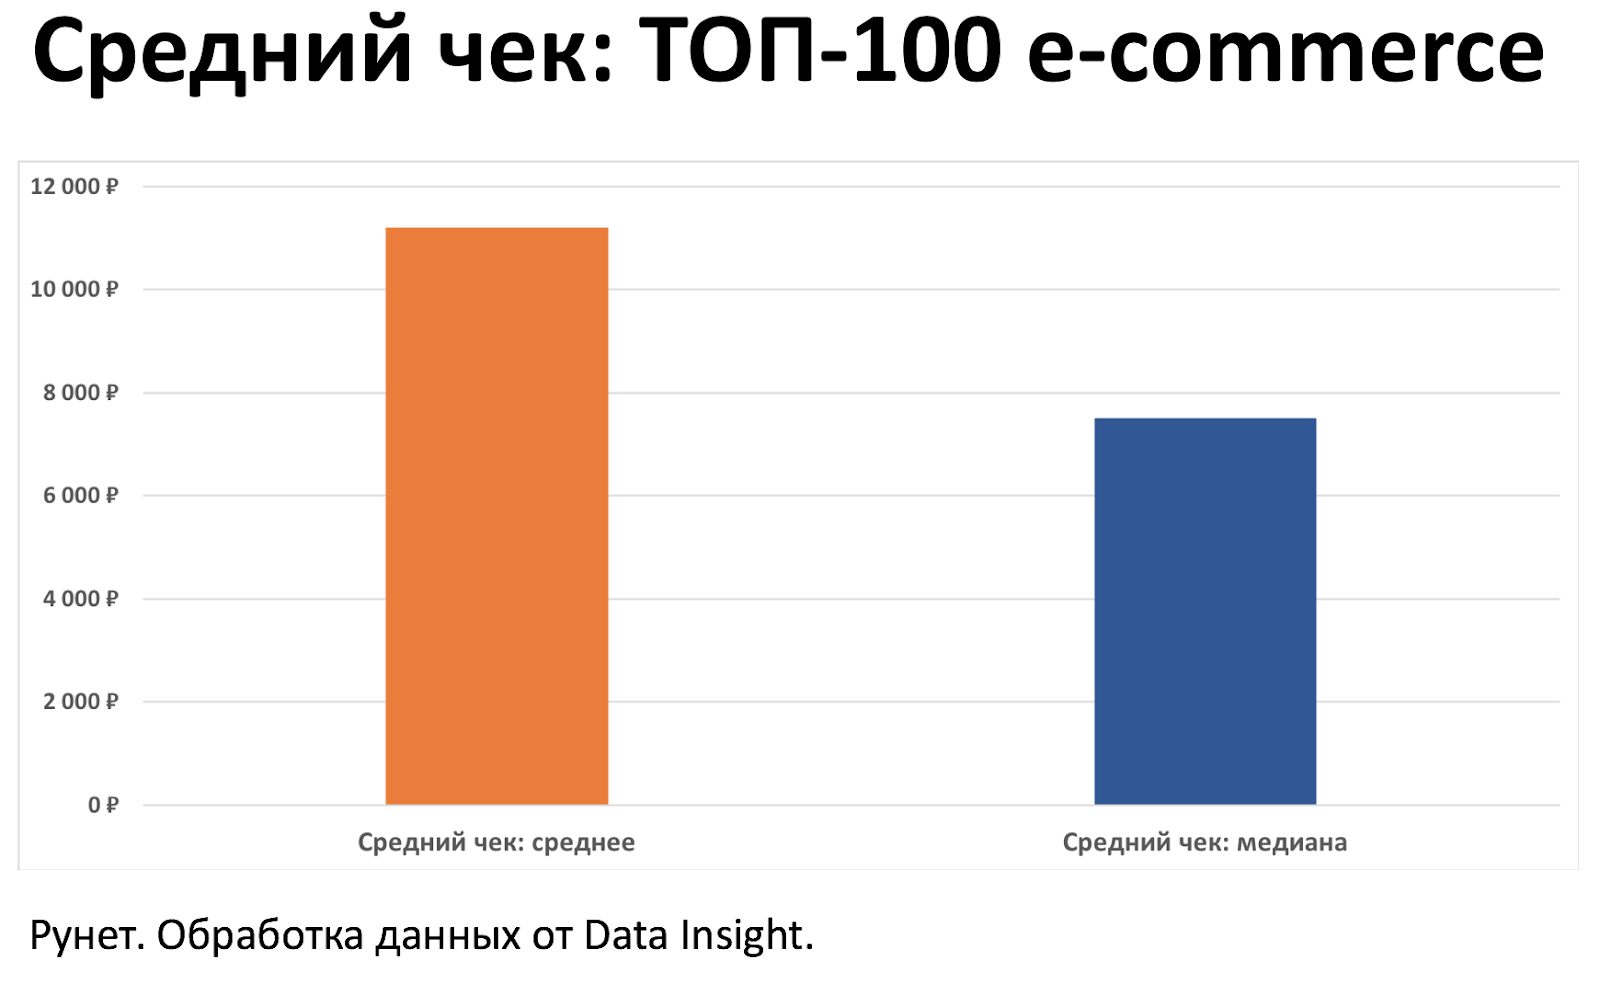 Средний чек в e-commerce по России